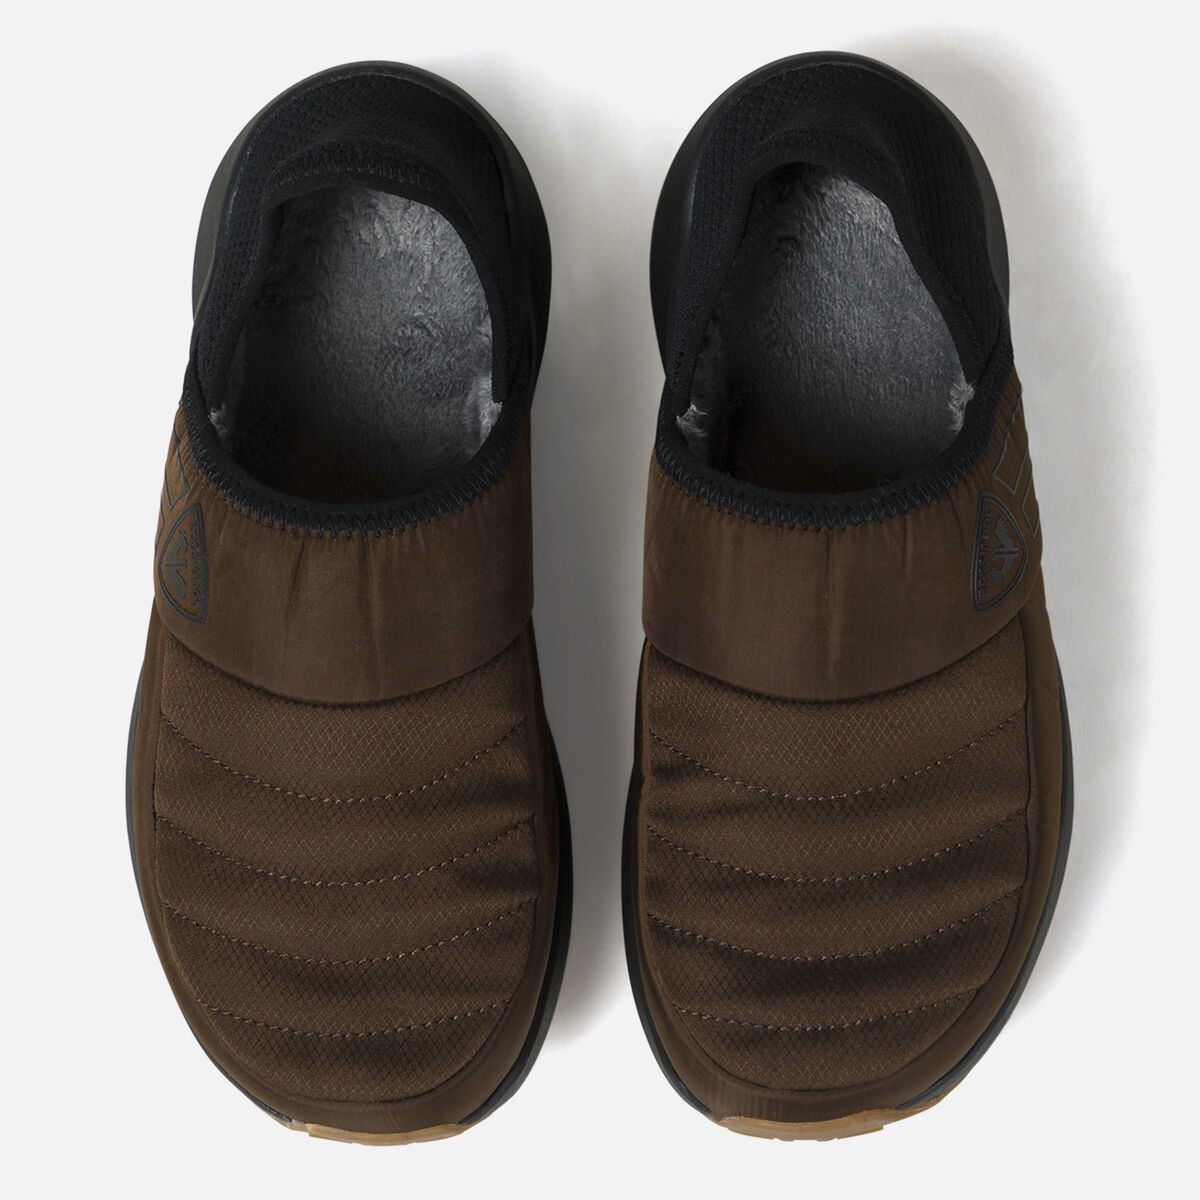 Pantofole invernali donna Chalet 2.0 marroni